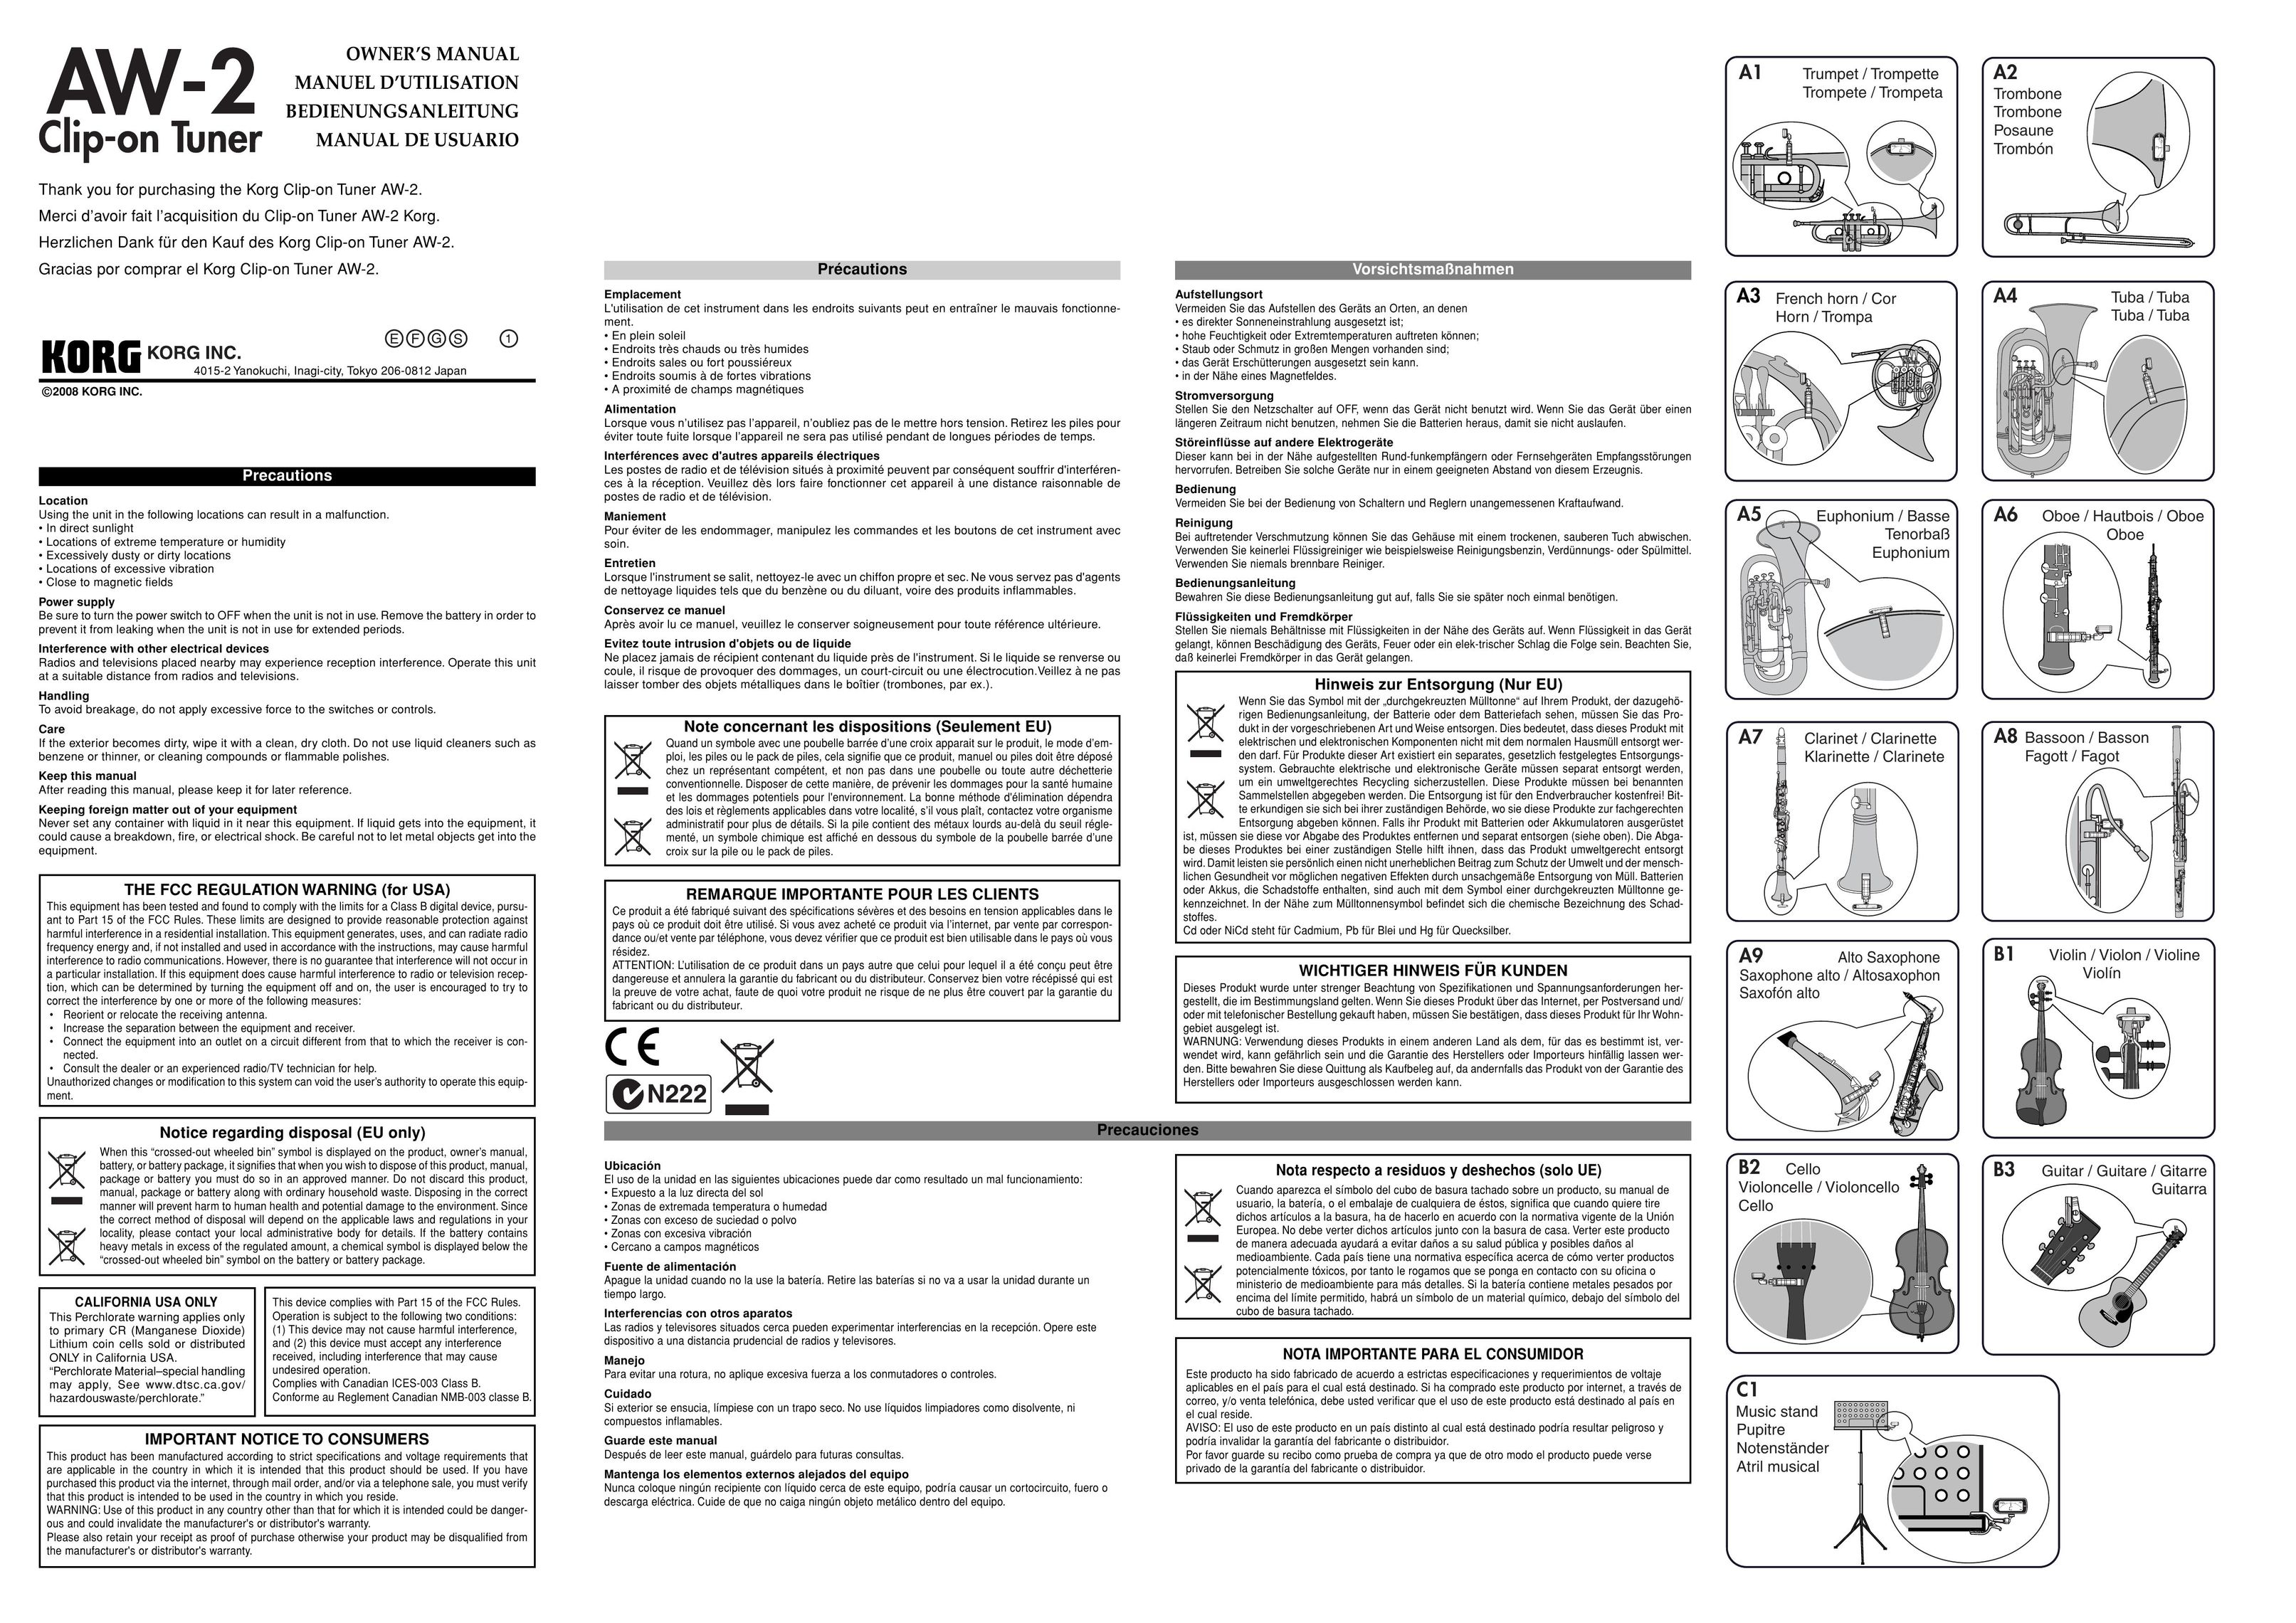 Korg AW-2 Car Stereo System User Manual